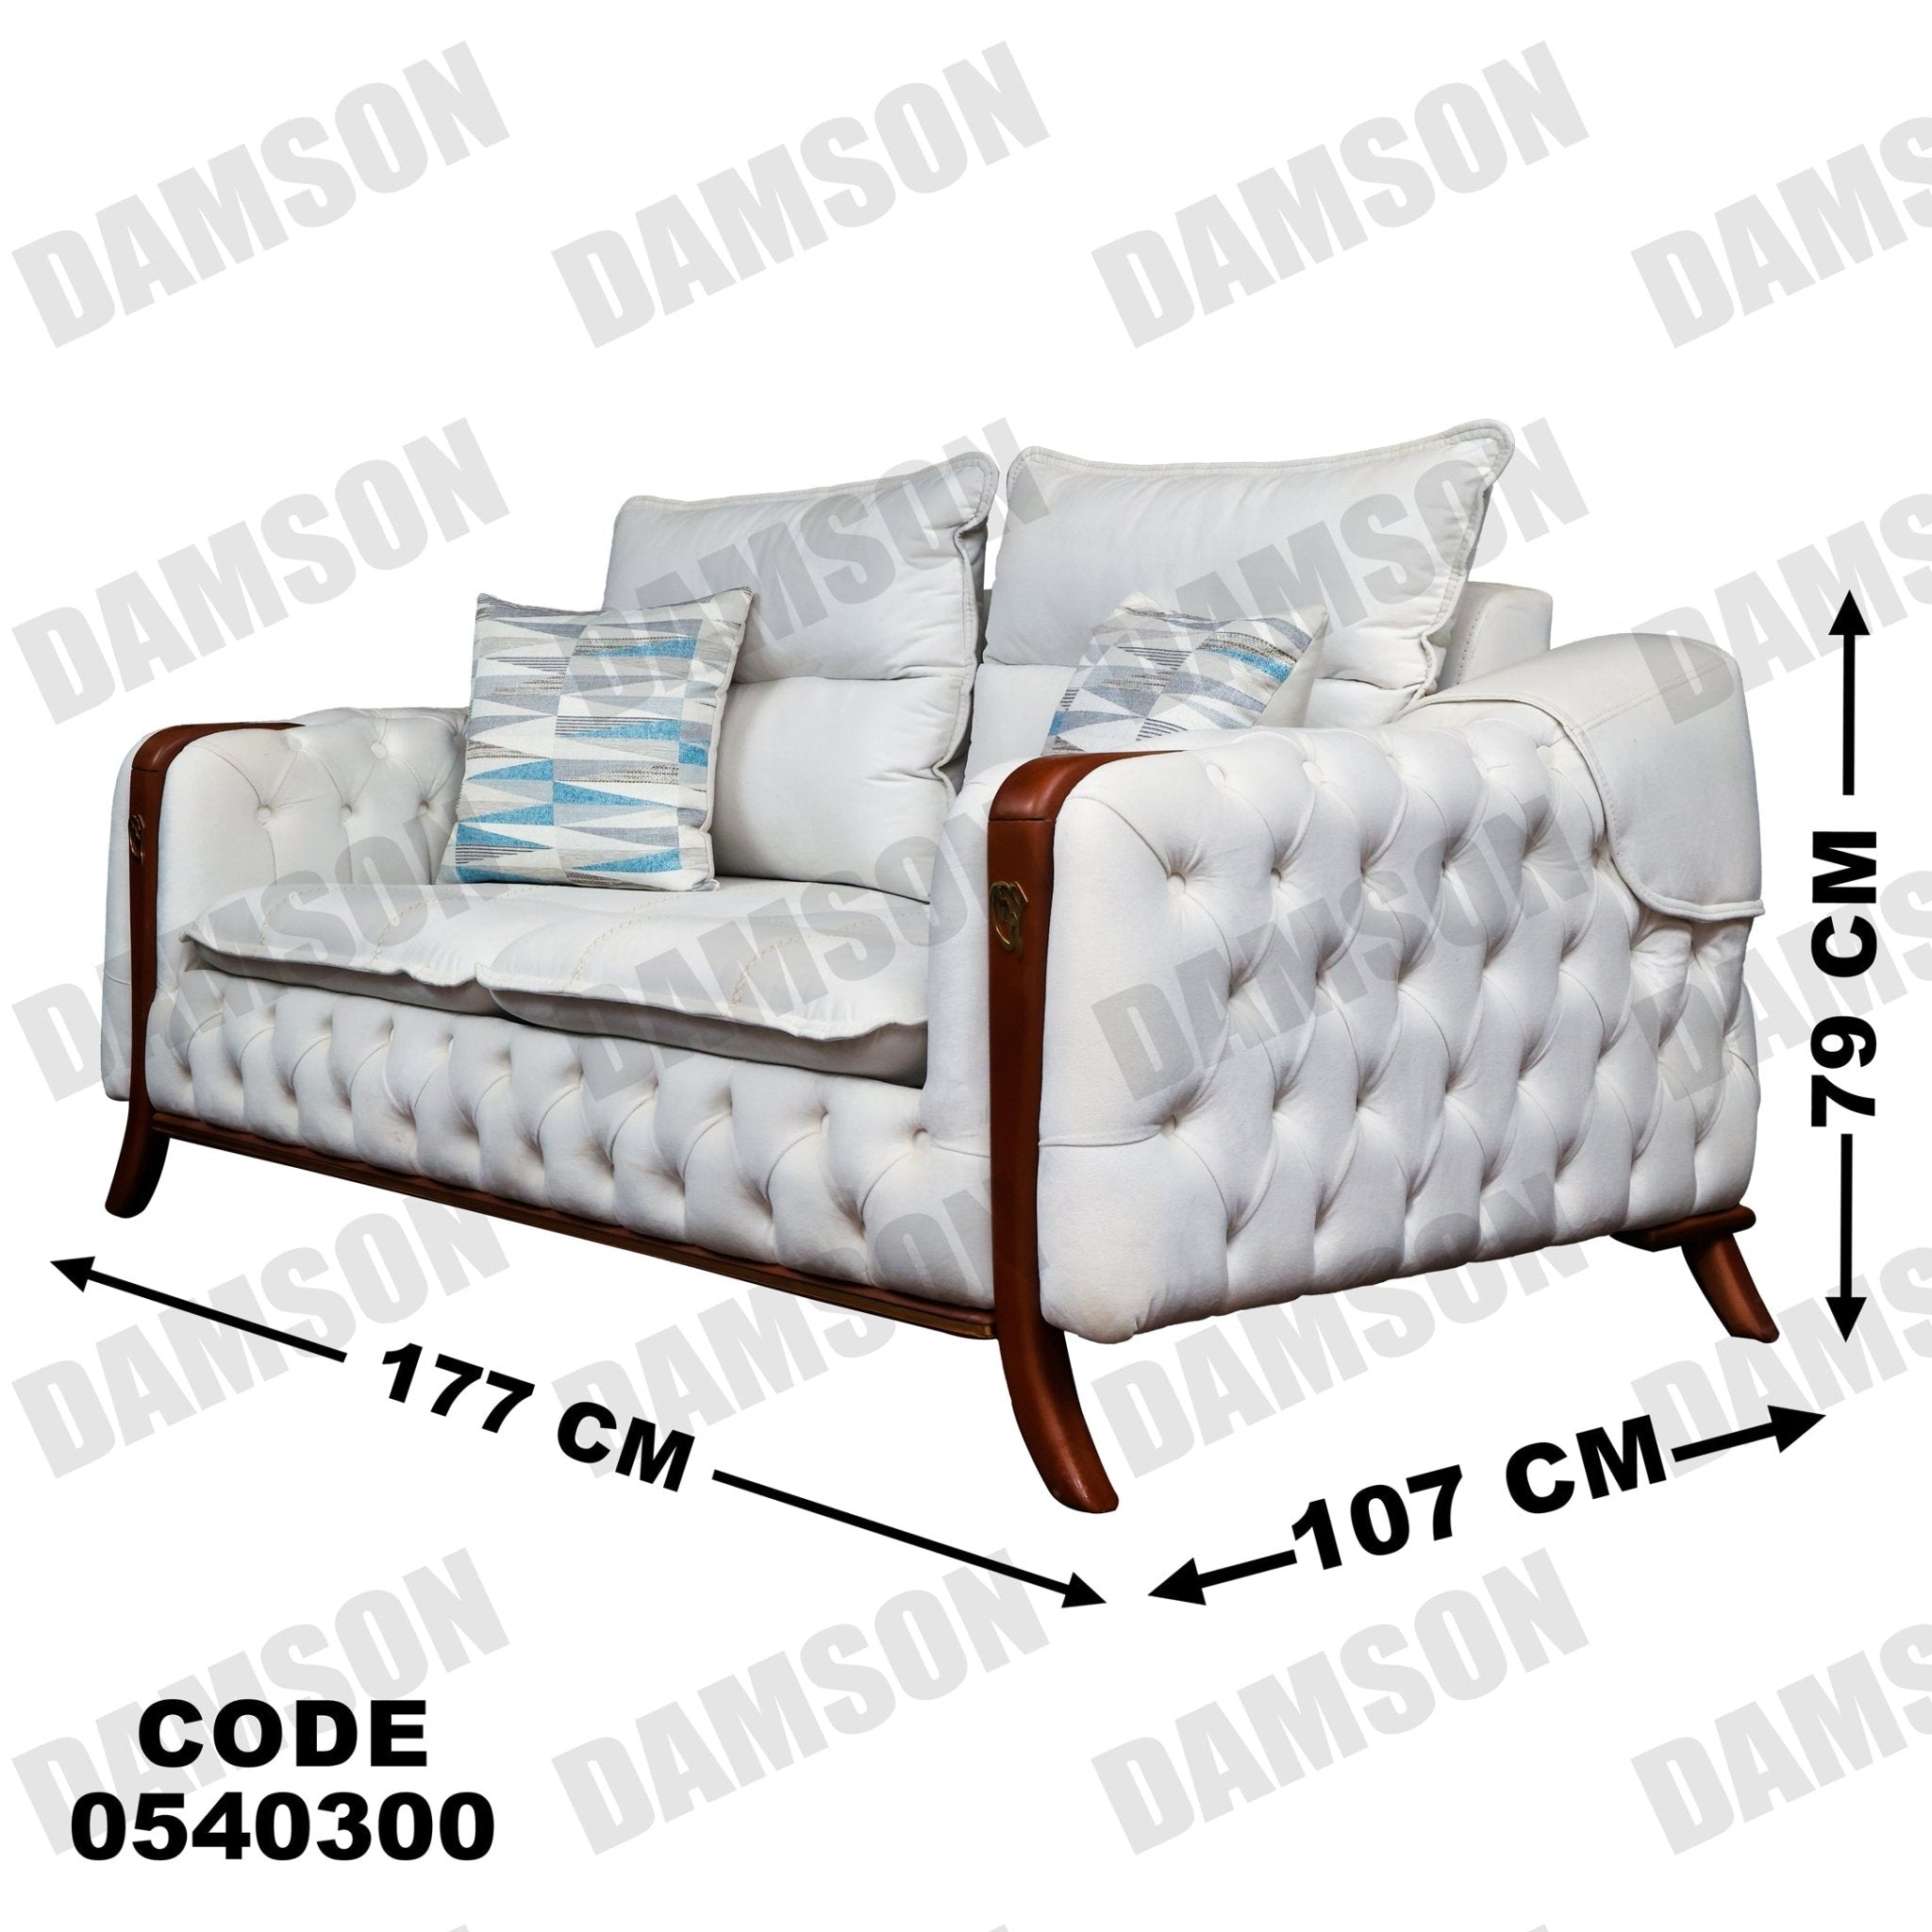 كنبة سرير 4-403 - Damson Furnitureكنبة سرير 4-403